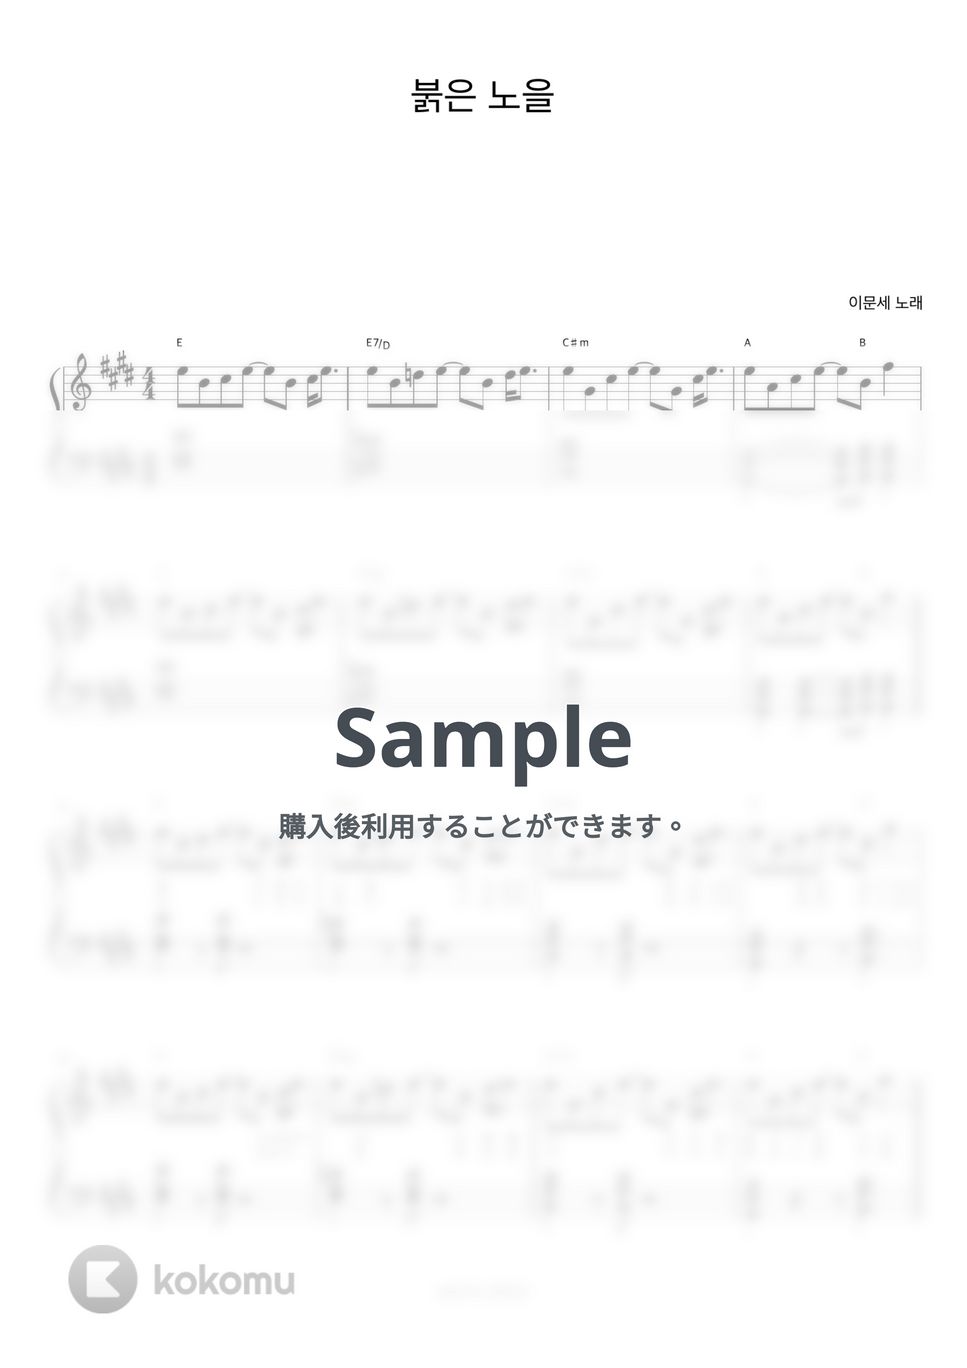 イ・ムンセ - 夕焼け (ピアノ伴奏楽譜) by 피아노정류장